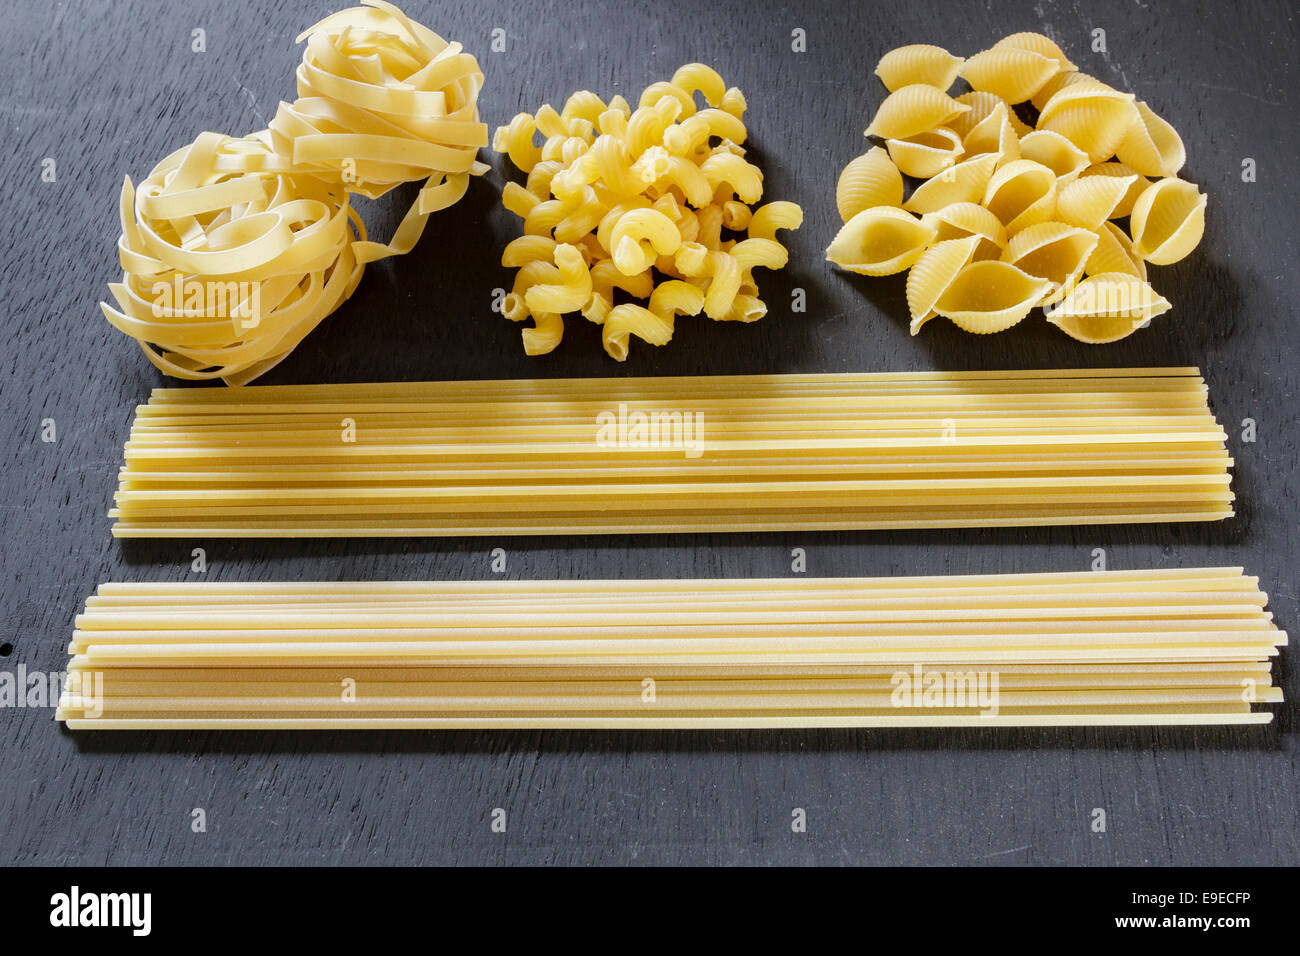 Verschiedene Arten von getrockneten Teigwaren, Spaghetti, Tagliatelle, Linguine, Spirali, conghiglie Stockfoto